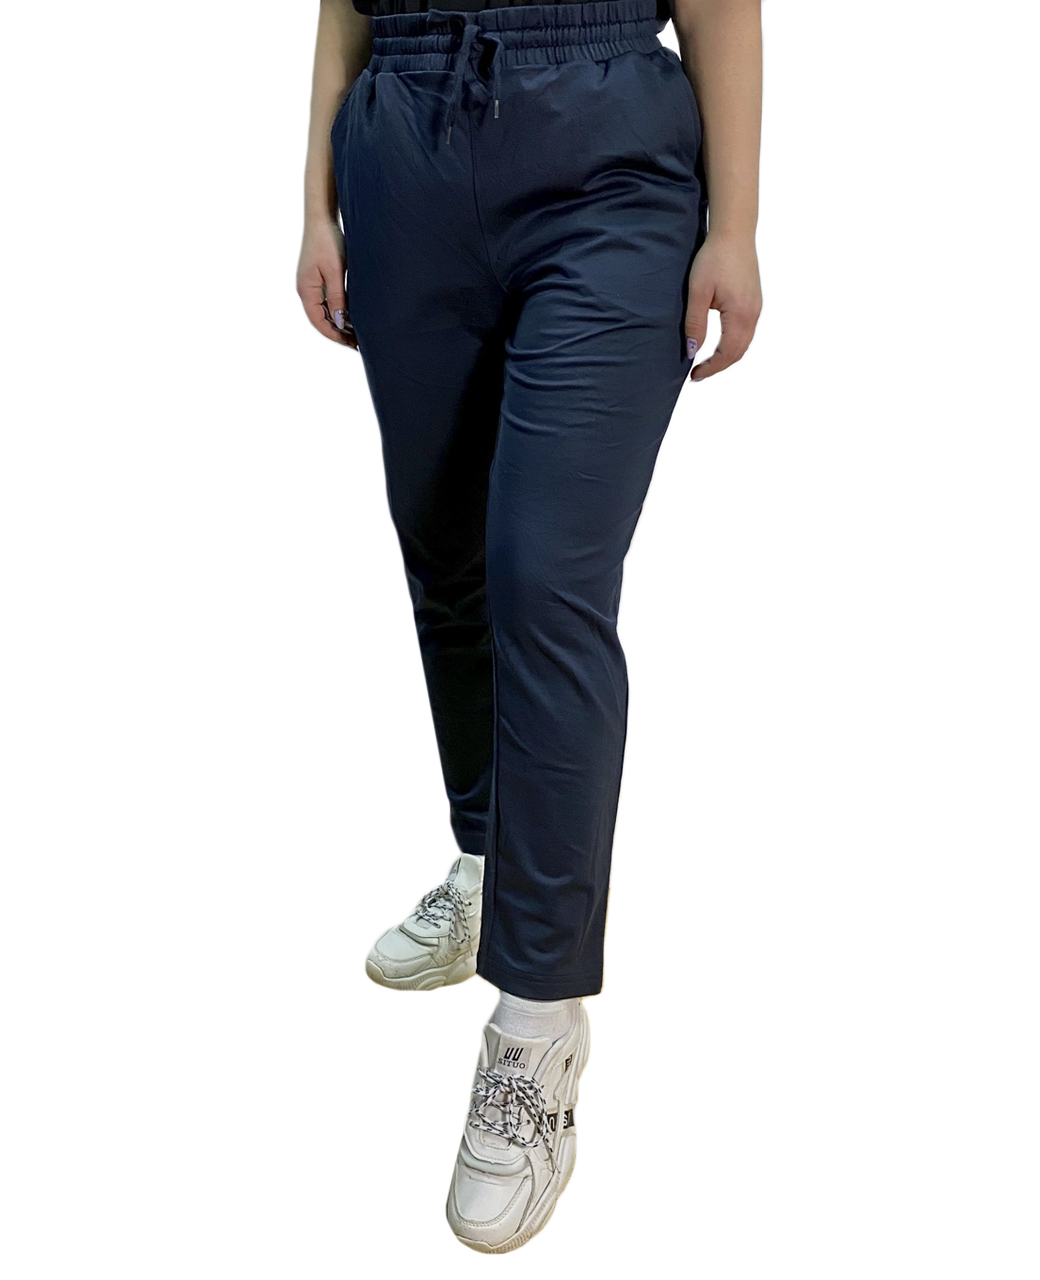 Женские спортивные штаны синего цвета №2001